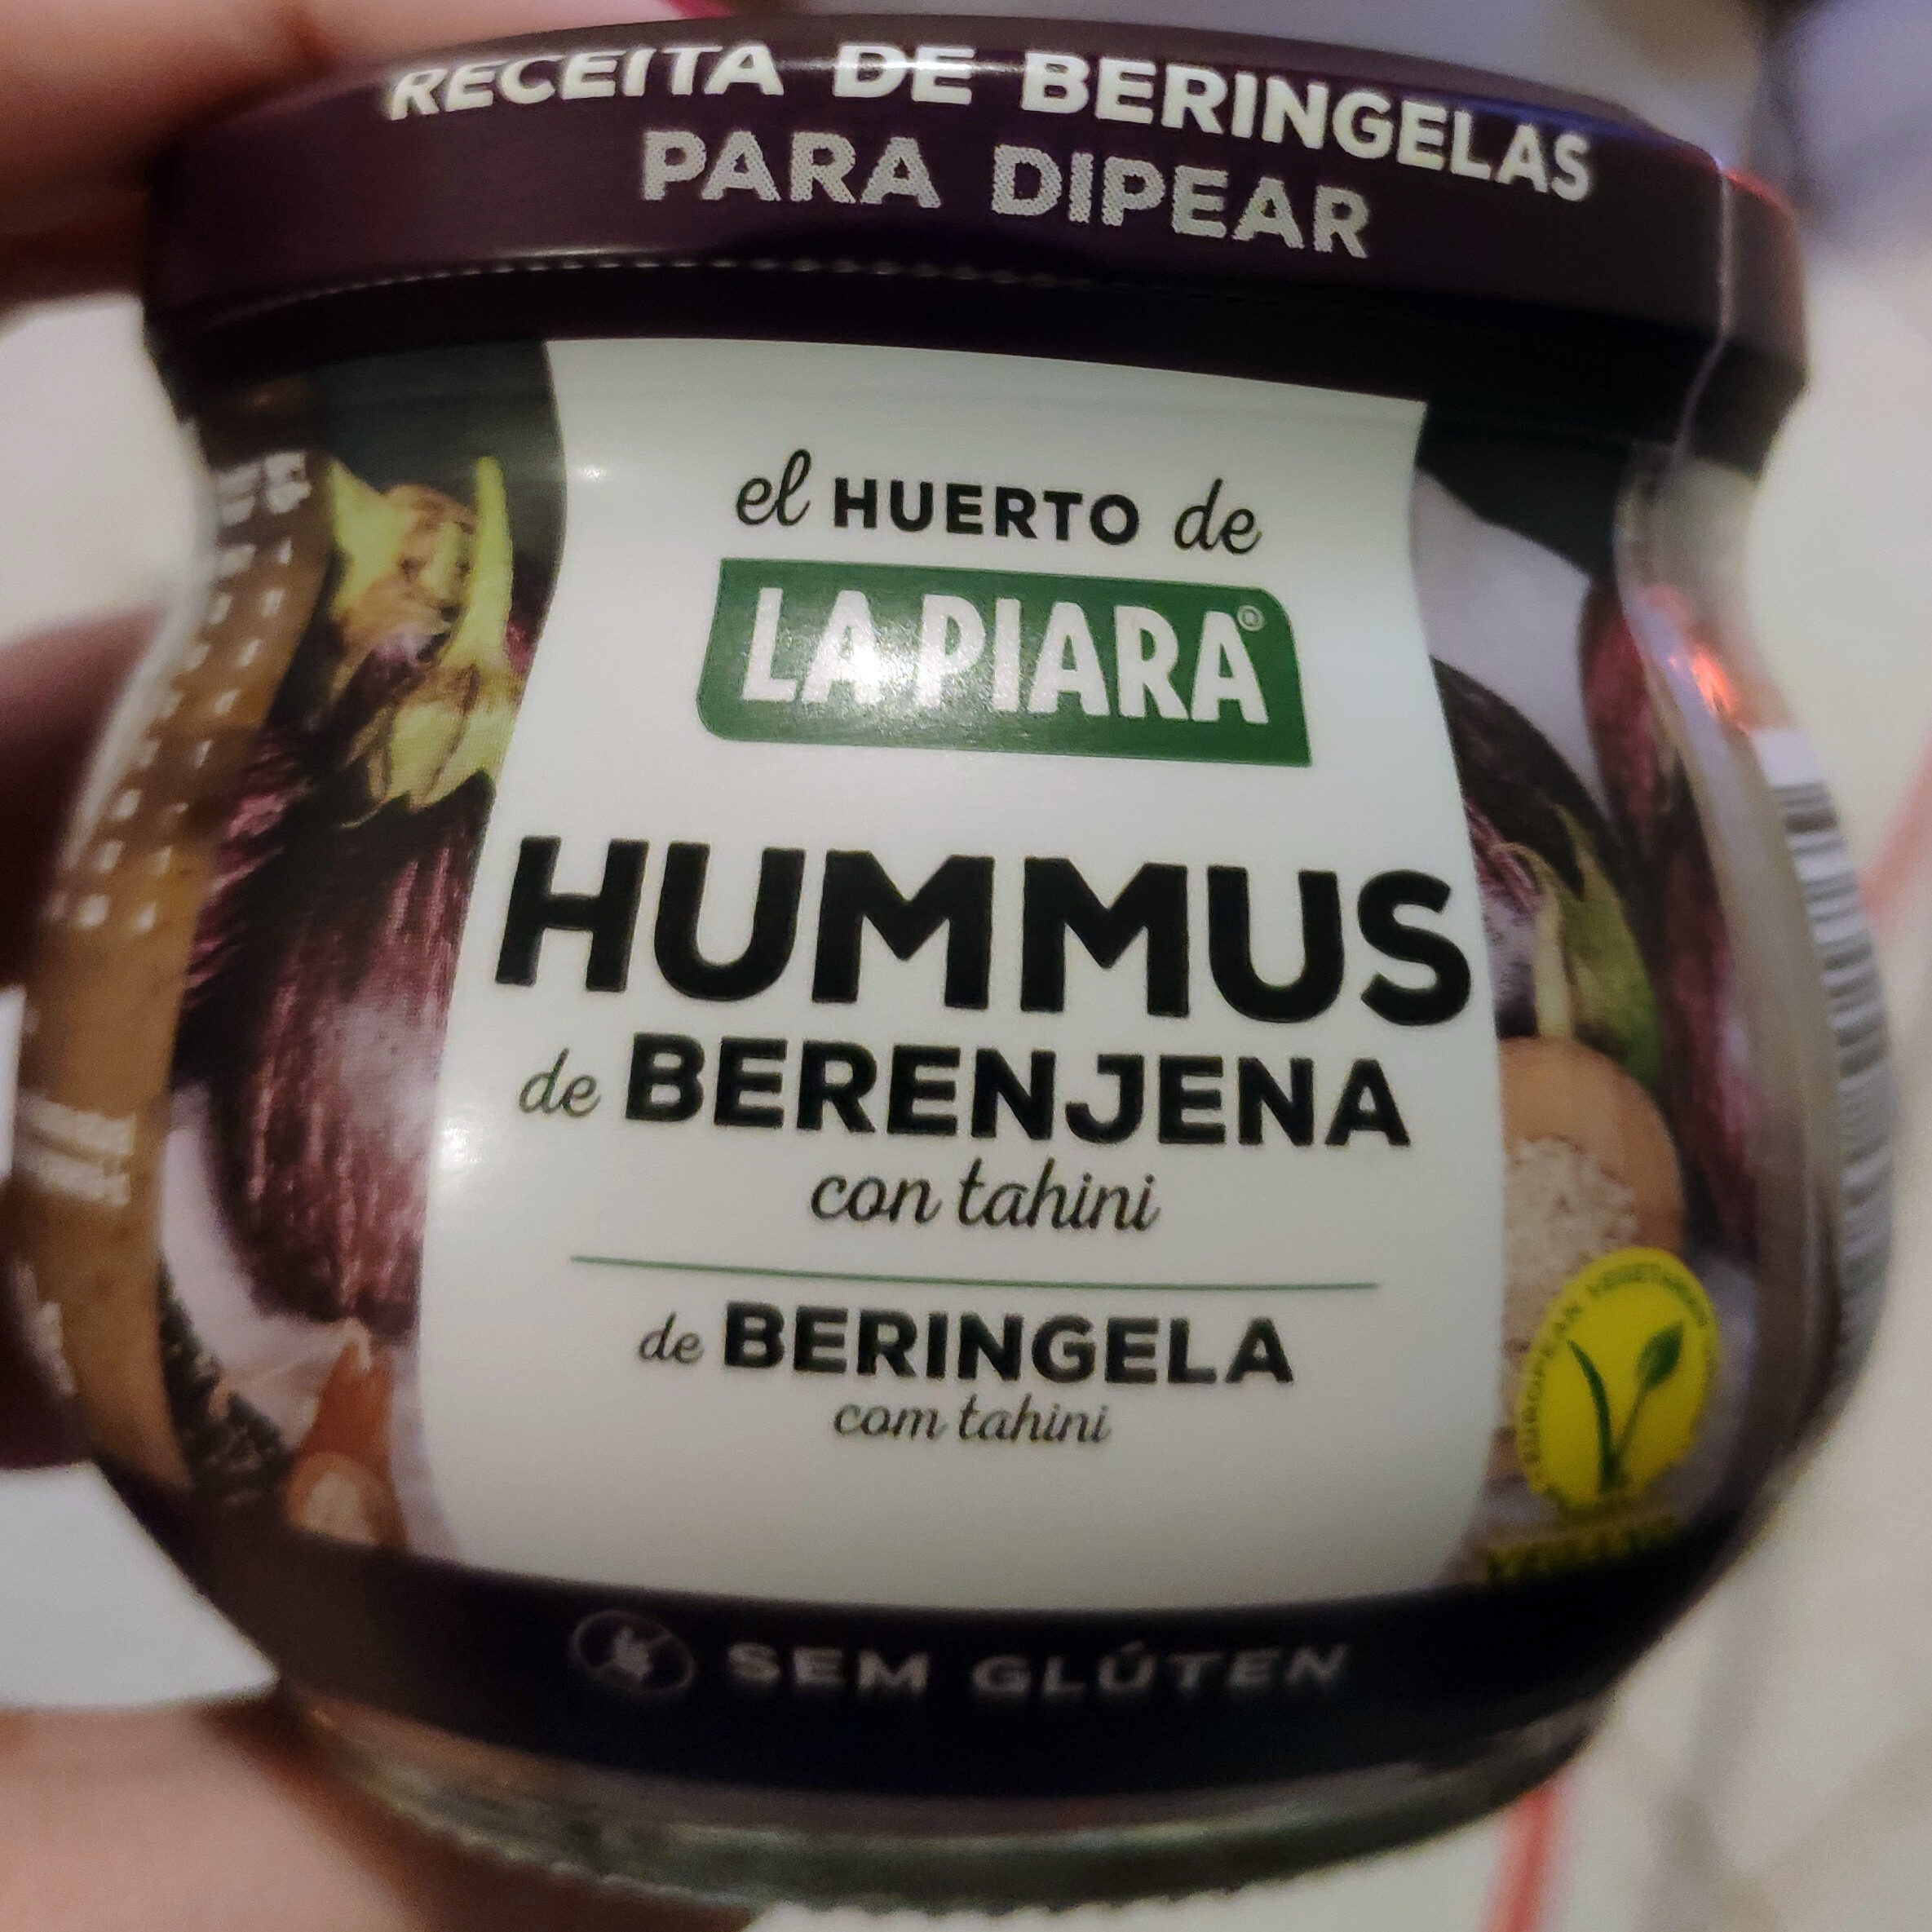 Hummus de berenjena con tahini - Produkt - es